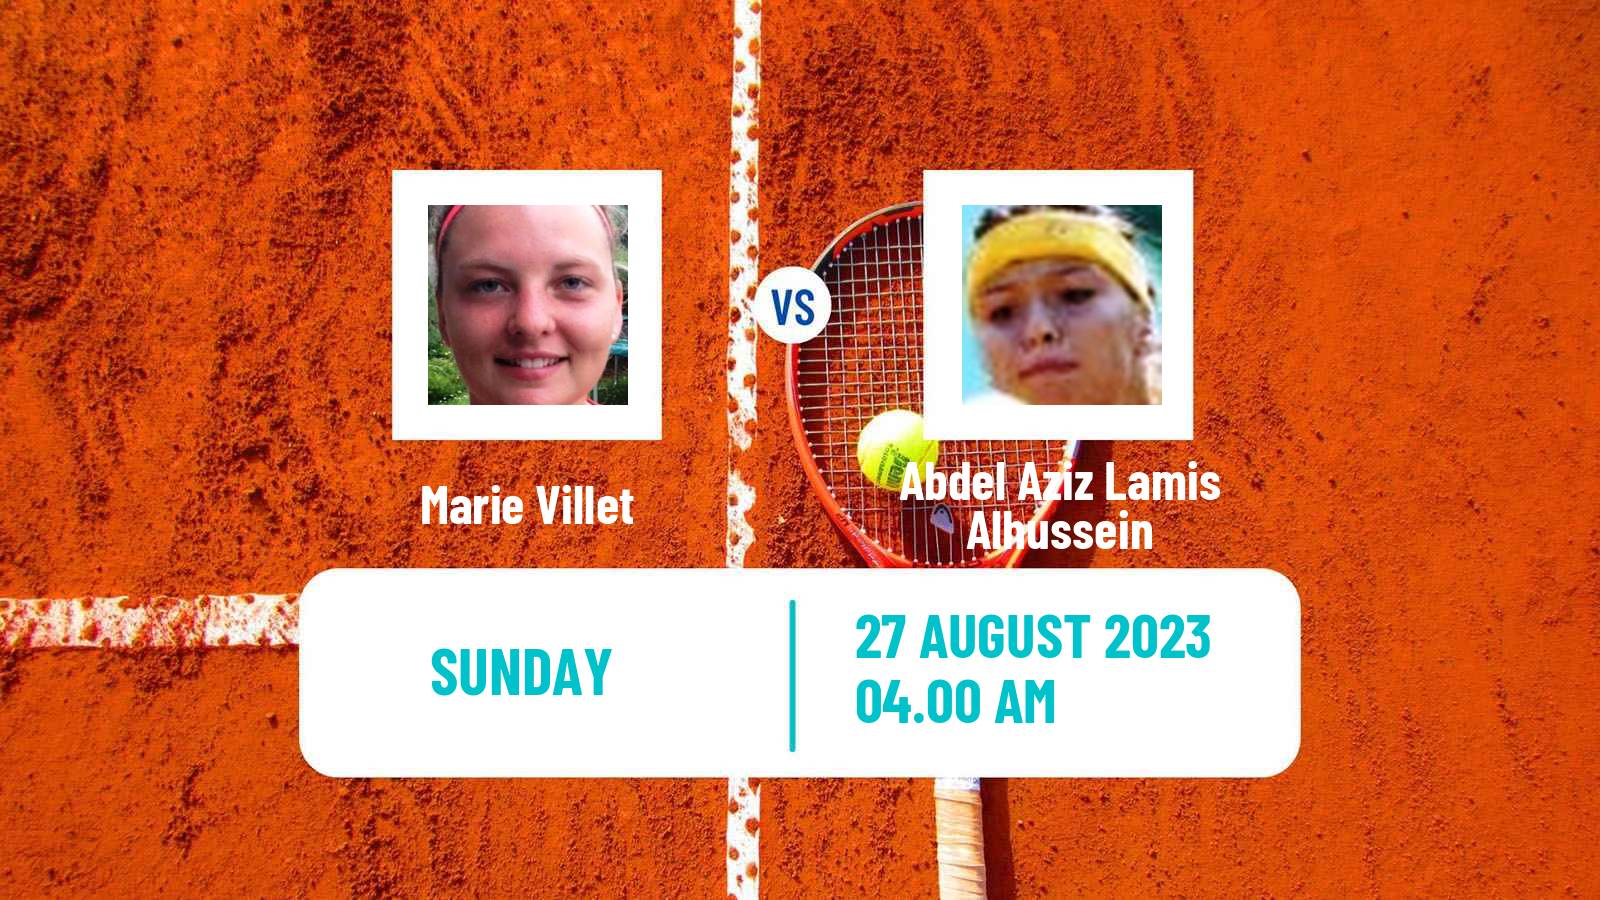 Tennis ITF W15 Monastir 29 Women Marie Villet - Abdel Aziz Lamis Alhussein